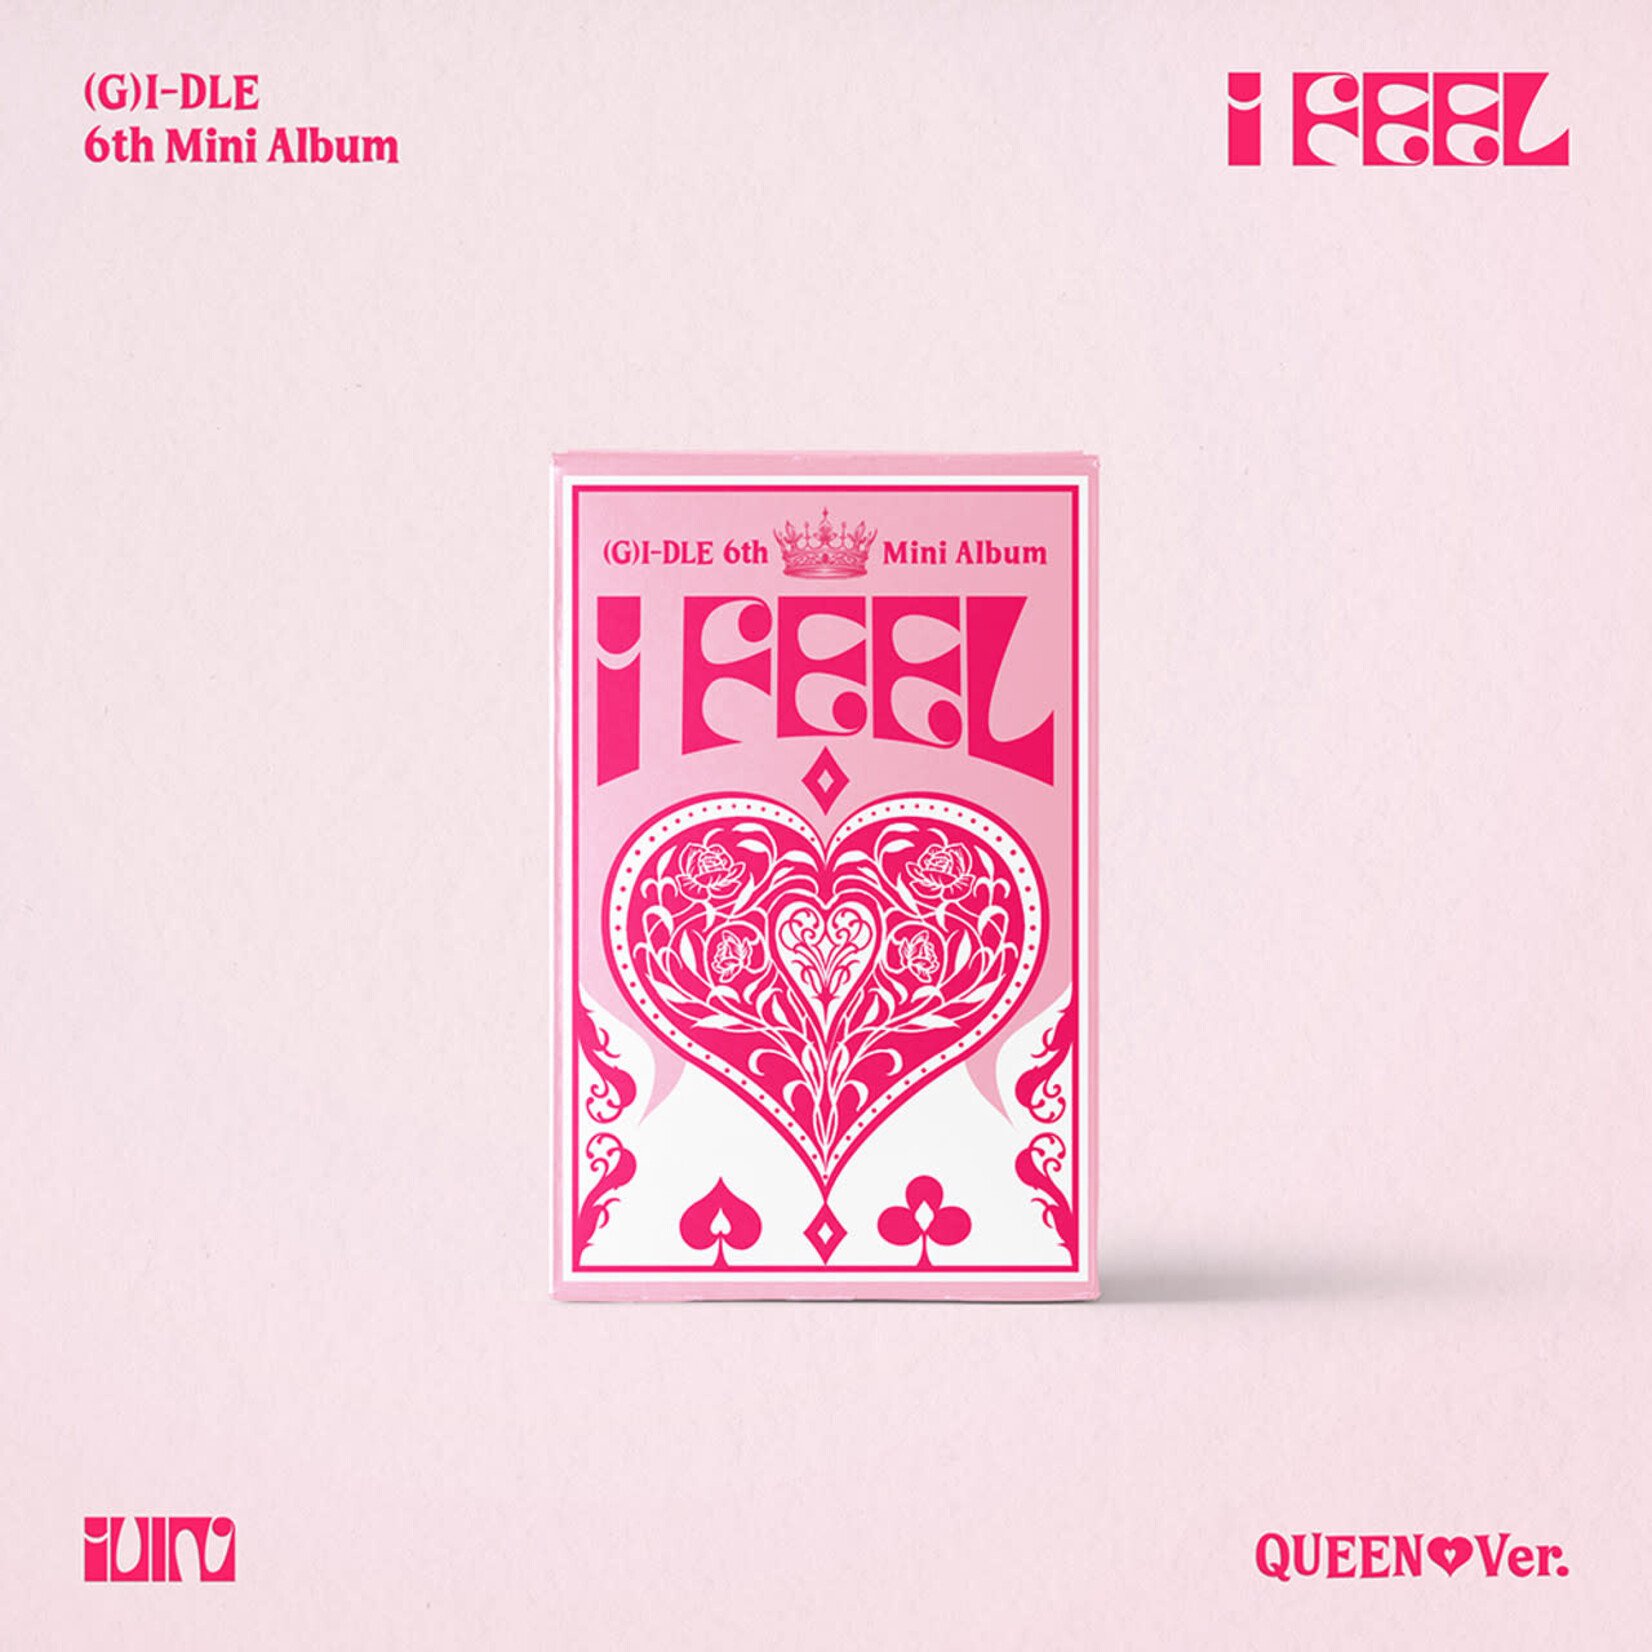 (G)I-DLE (G)I-DLE - 6th Mini Album [I feel] (Queen Ver.)